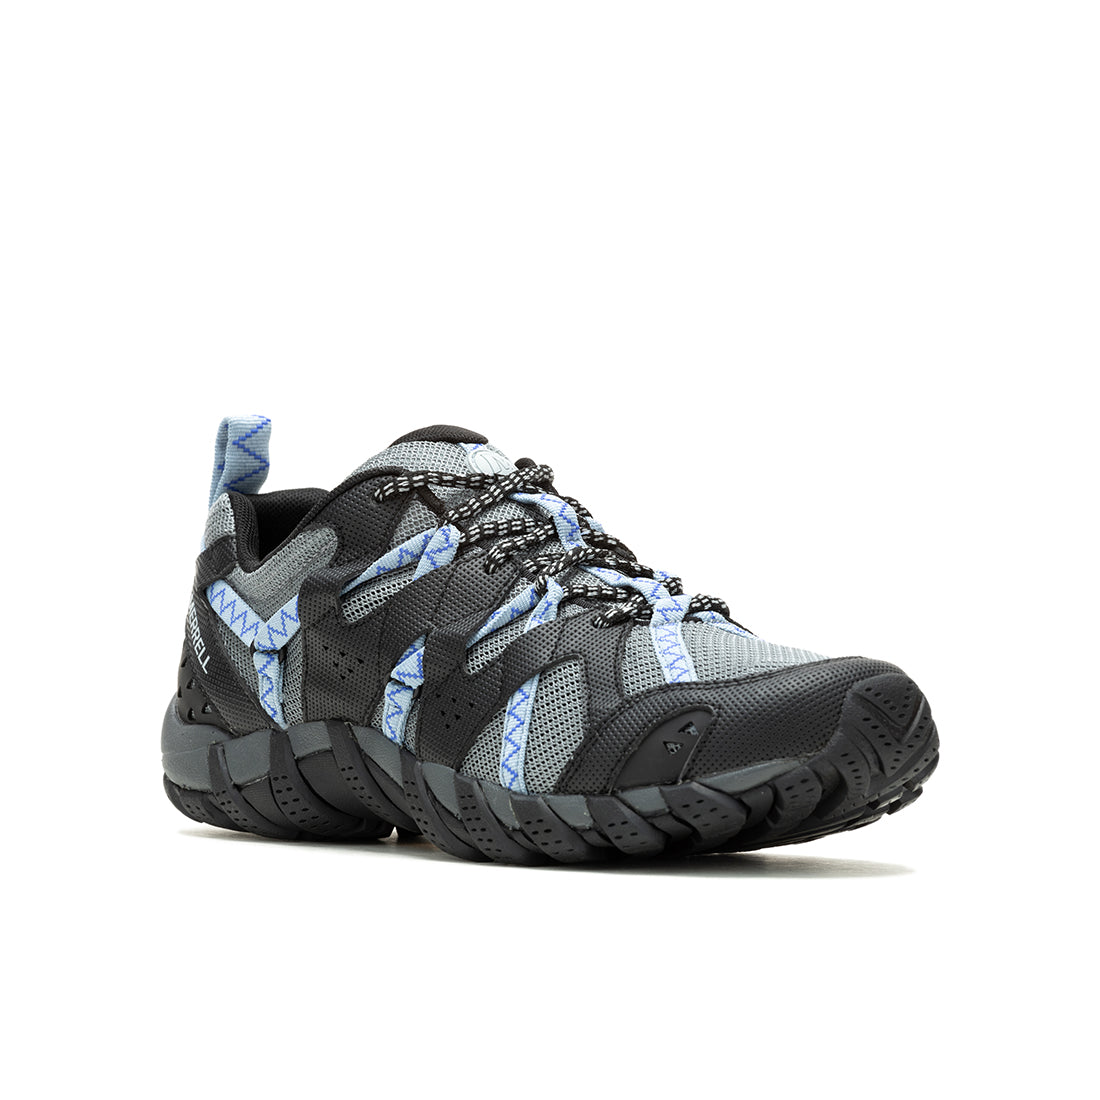 Waterpro Maipo 2 – Black/Chambray Womens Hydro Hiking Shoes - 0